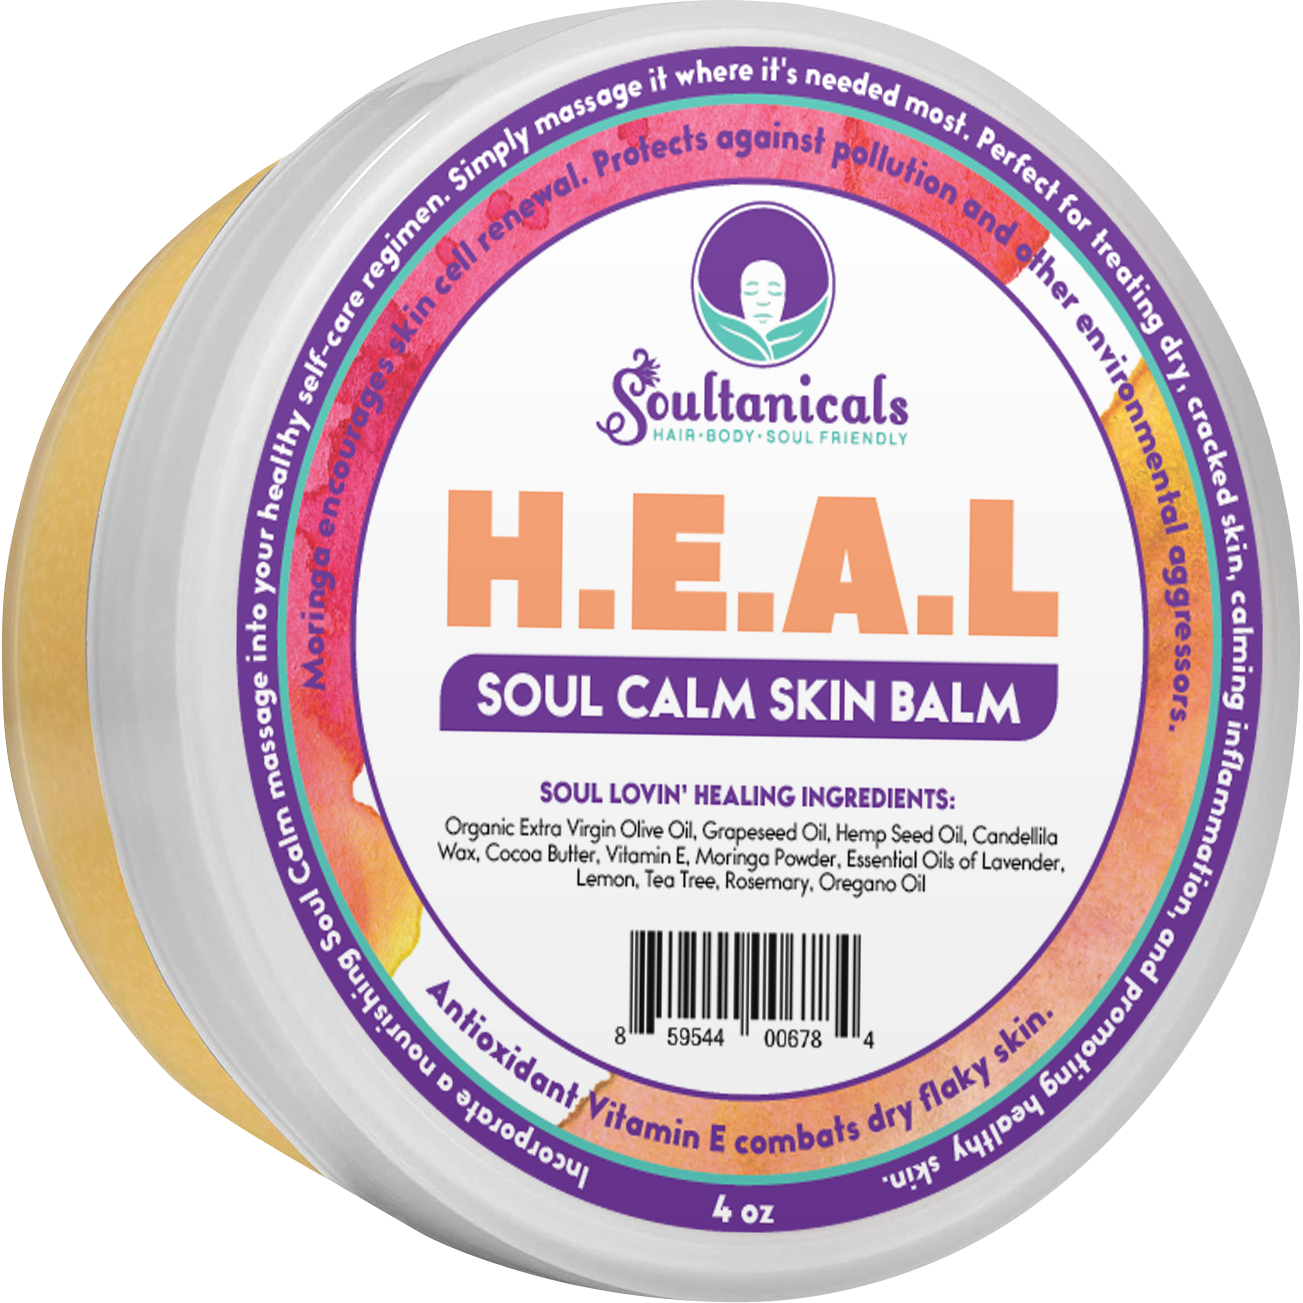 H.E.A.L. Soul Calm Skin Balm